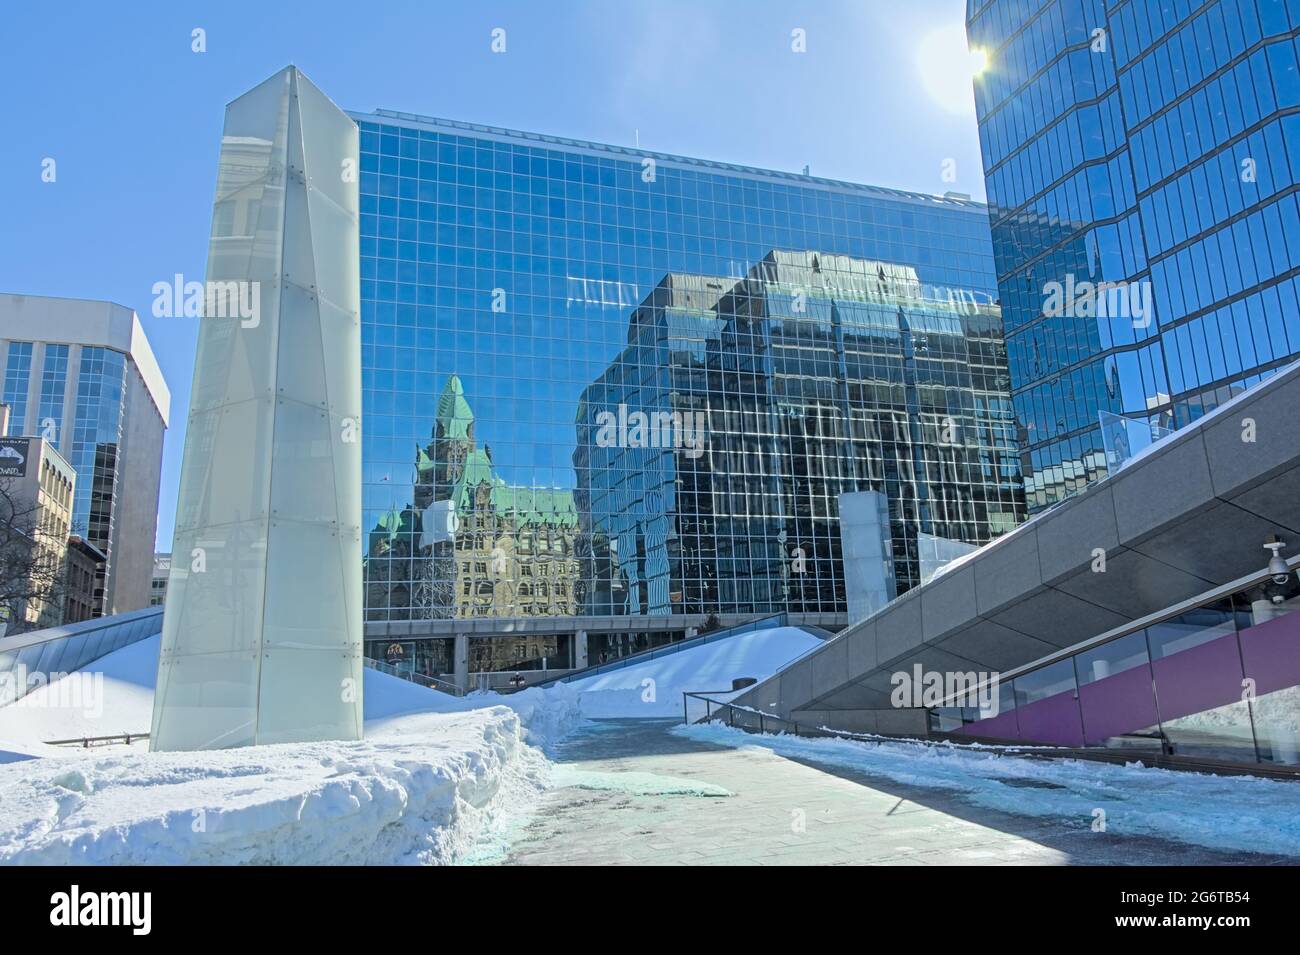 Spiegelung eines traditionellen gotischen Revival-Gebäudes an der Wand eines modernen Bürogebäudes aus Glas und Stahl in Ottawa, Kanada Stockfoto